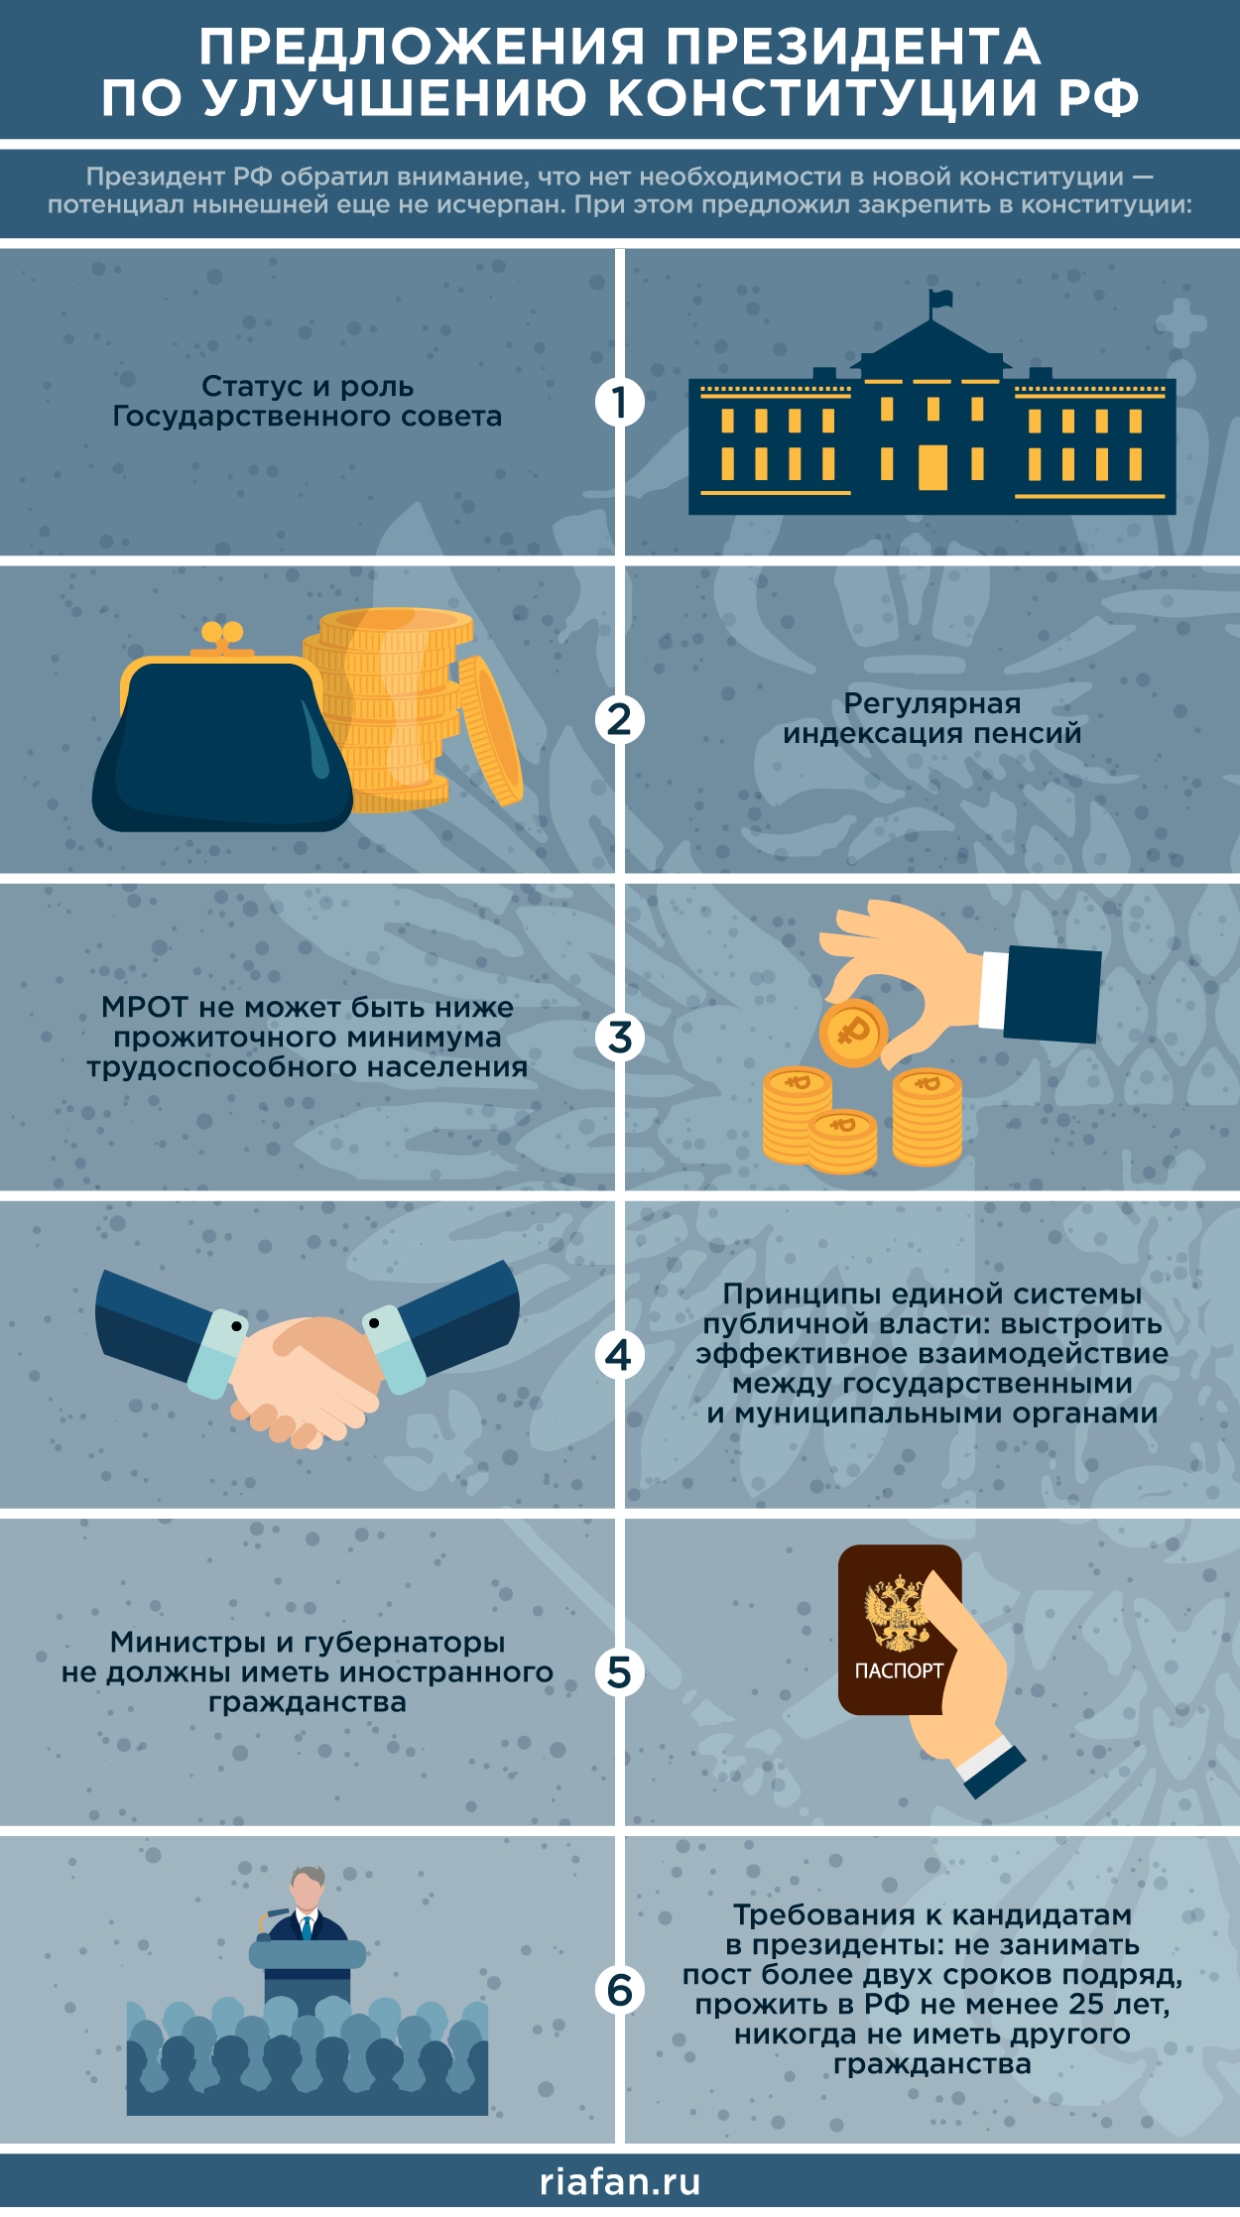 Россиянам разъяснили, как оплачивается выходной 22 апреля для голосования по конституции